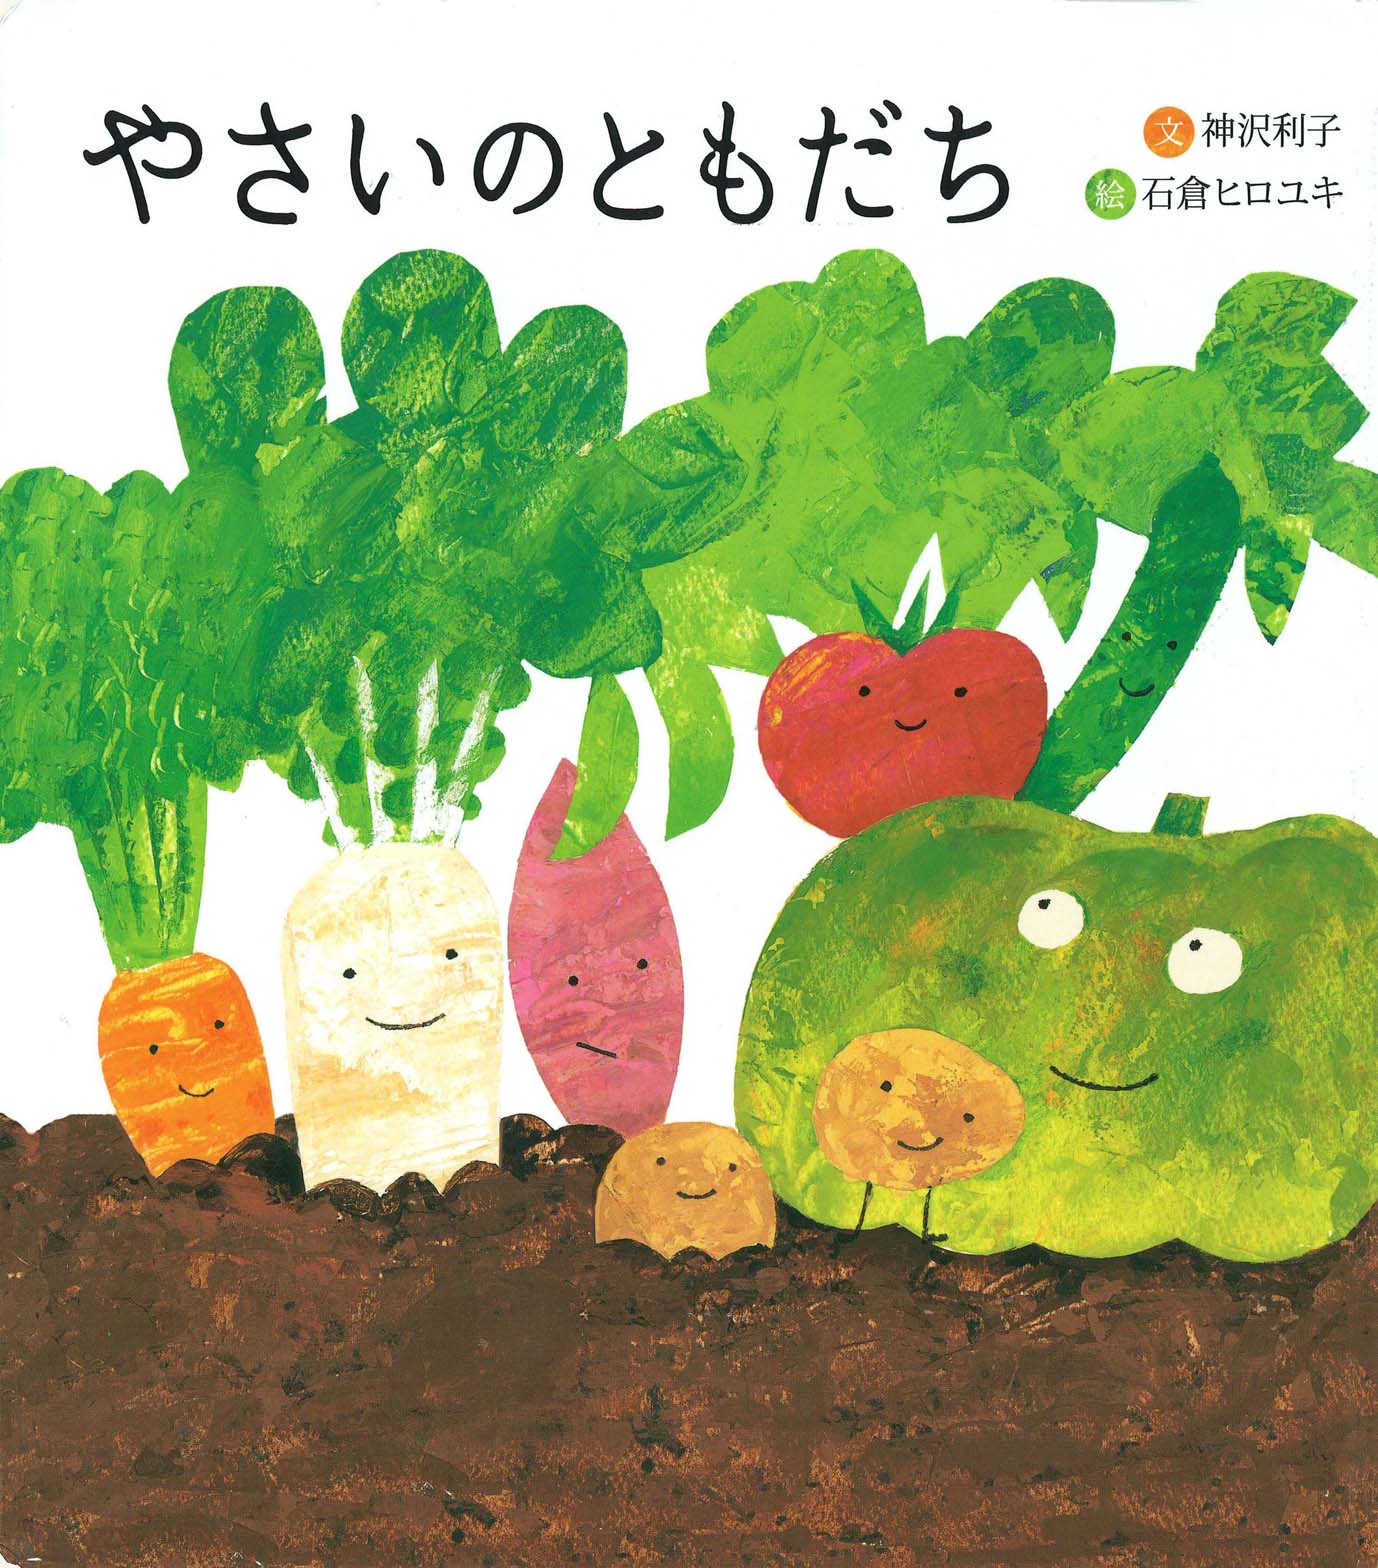 生活中常见的蔬菜用日语怎么说